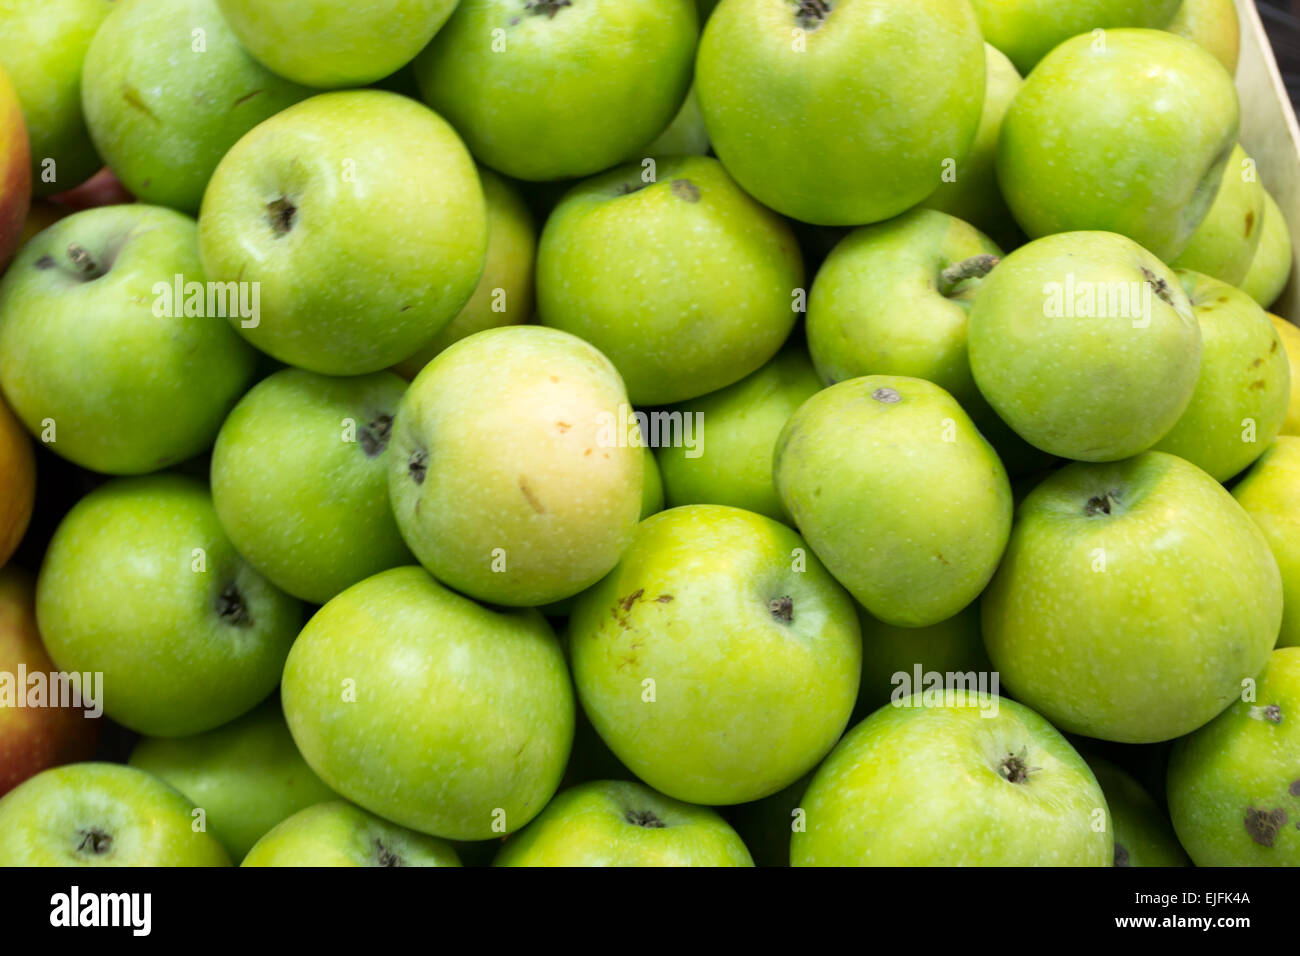 Grüne Äpfel an einem Marktstand bereit für den Kauf Stockfoto